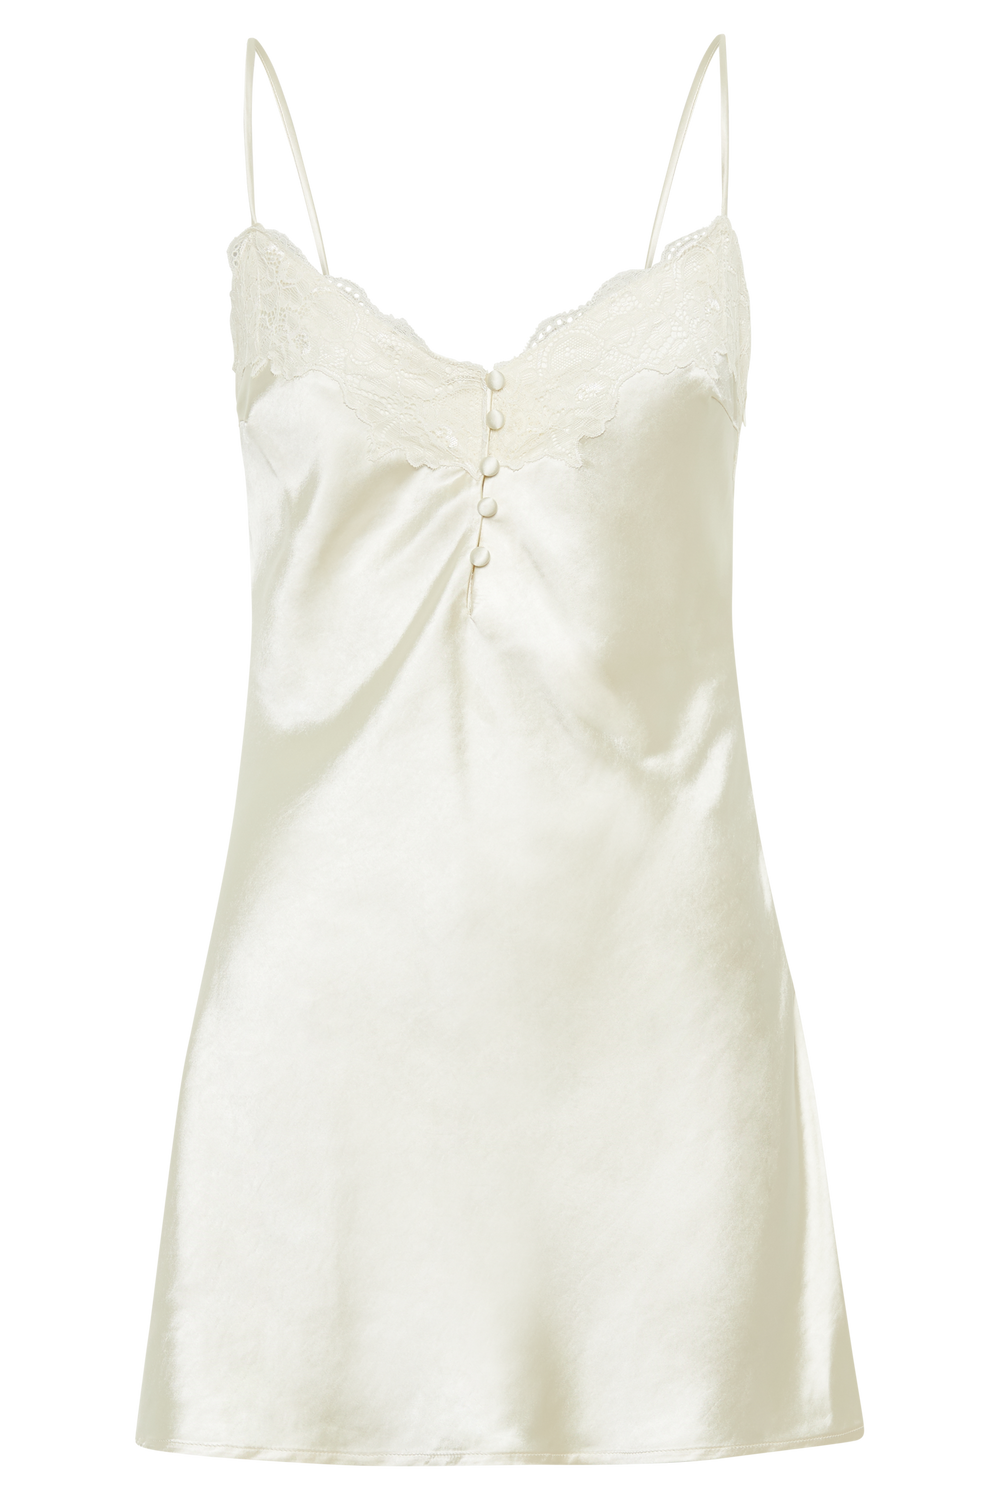 Vesta Lace Satin Dress - Ivory